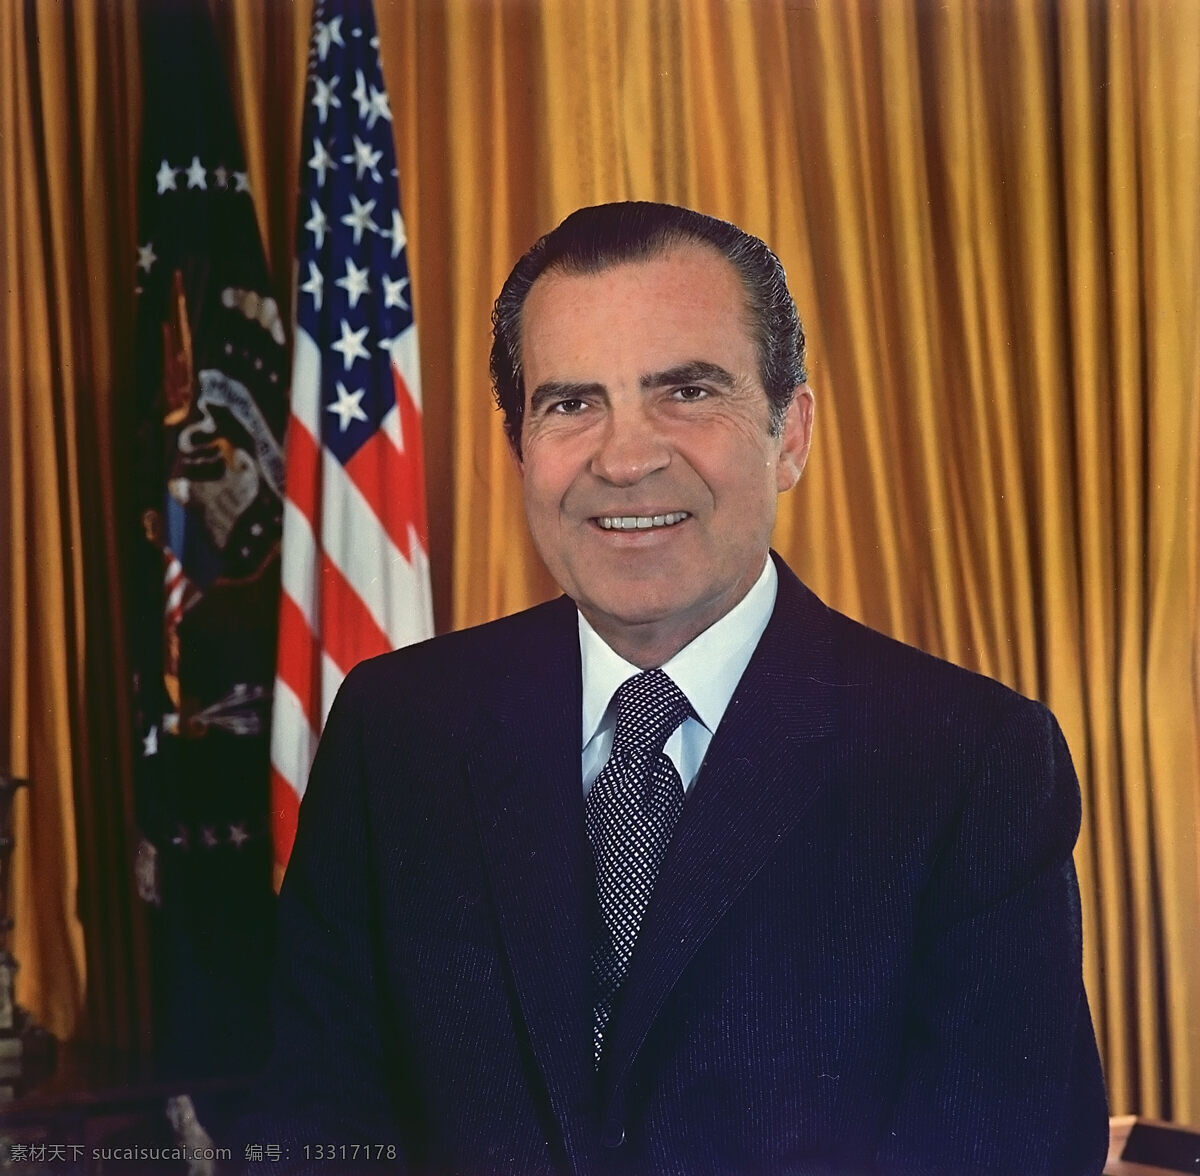 国旗 美国 人物图库 职业人物 总统 美国第 37 任总 统 理查德 尼克松 政坛人物 第37任 理查德尼克松 psd源文件